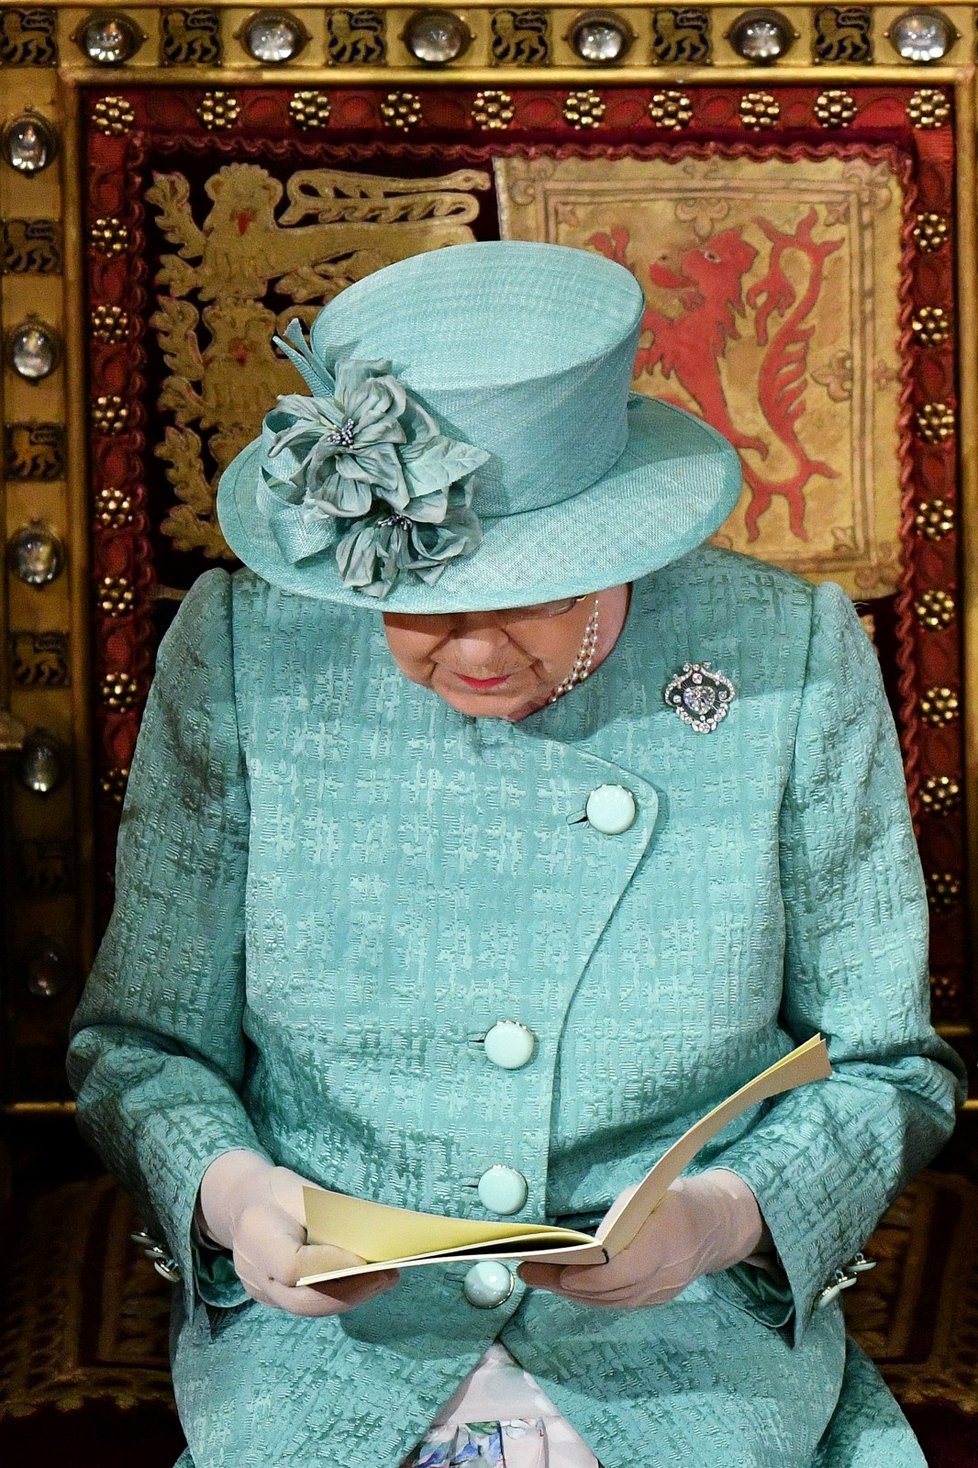 Královna Alžběta II. dorazila na tradiční čtení programu vlády na úvod schůze parlamentu. Doprovodil ji princ Charles (19. 12. 2019).